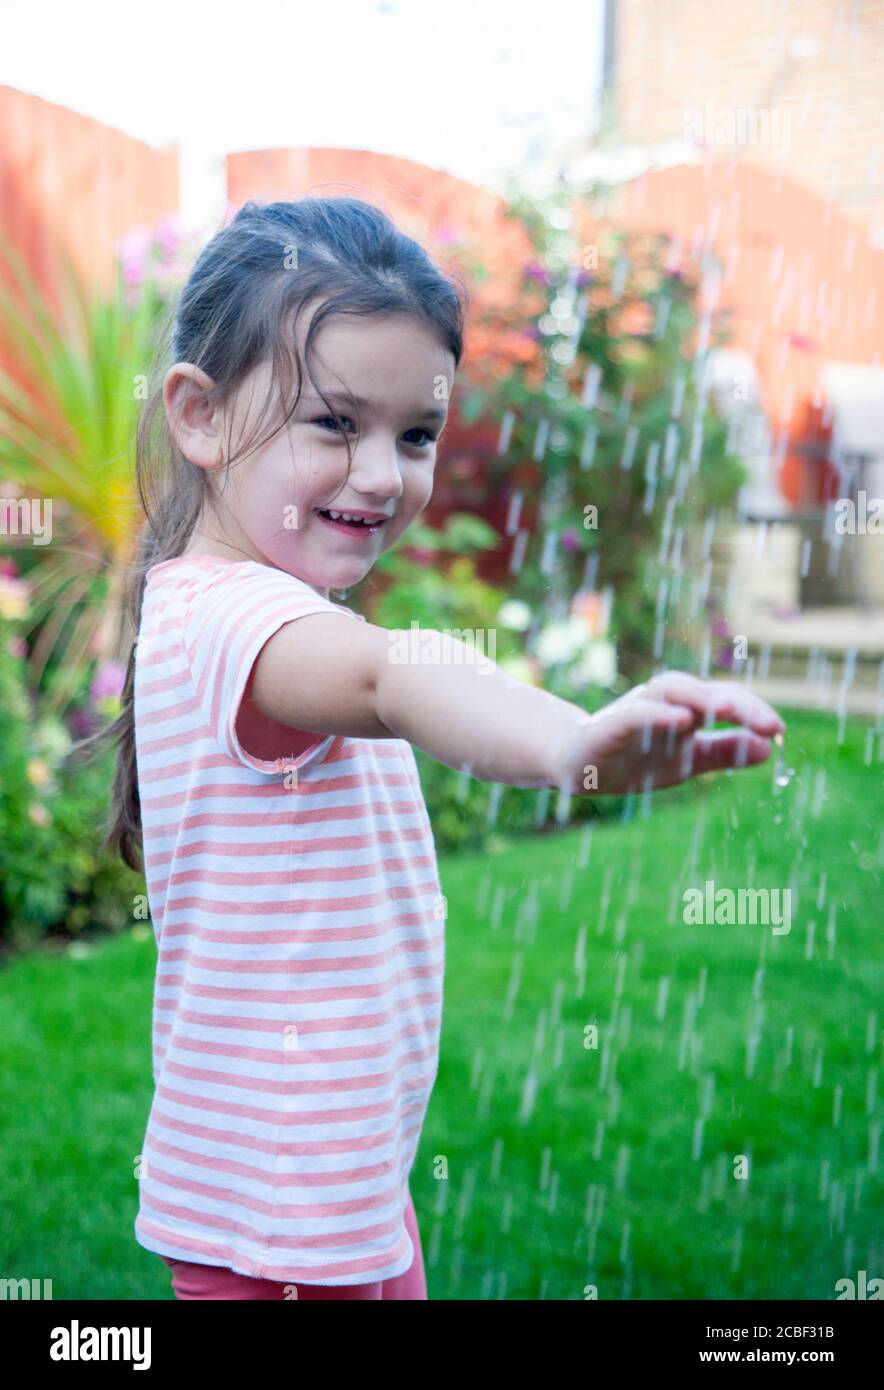 Une fille de 4 ans, portant un t-shirt à rayures, tient un bras sous des gouttelettes d'eau dans un jardin anglais pendant l'été. Lancashire, Angleterre, Royaume-Uni Banque D'Images